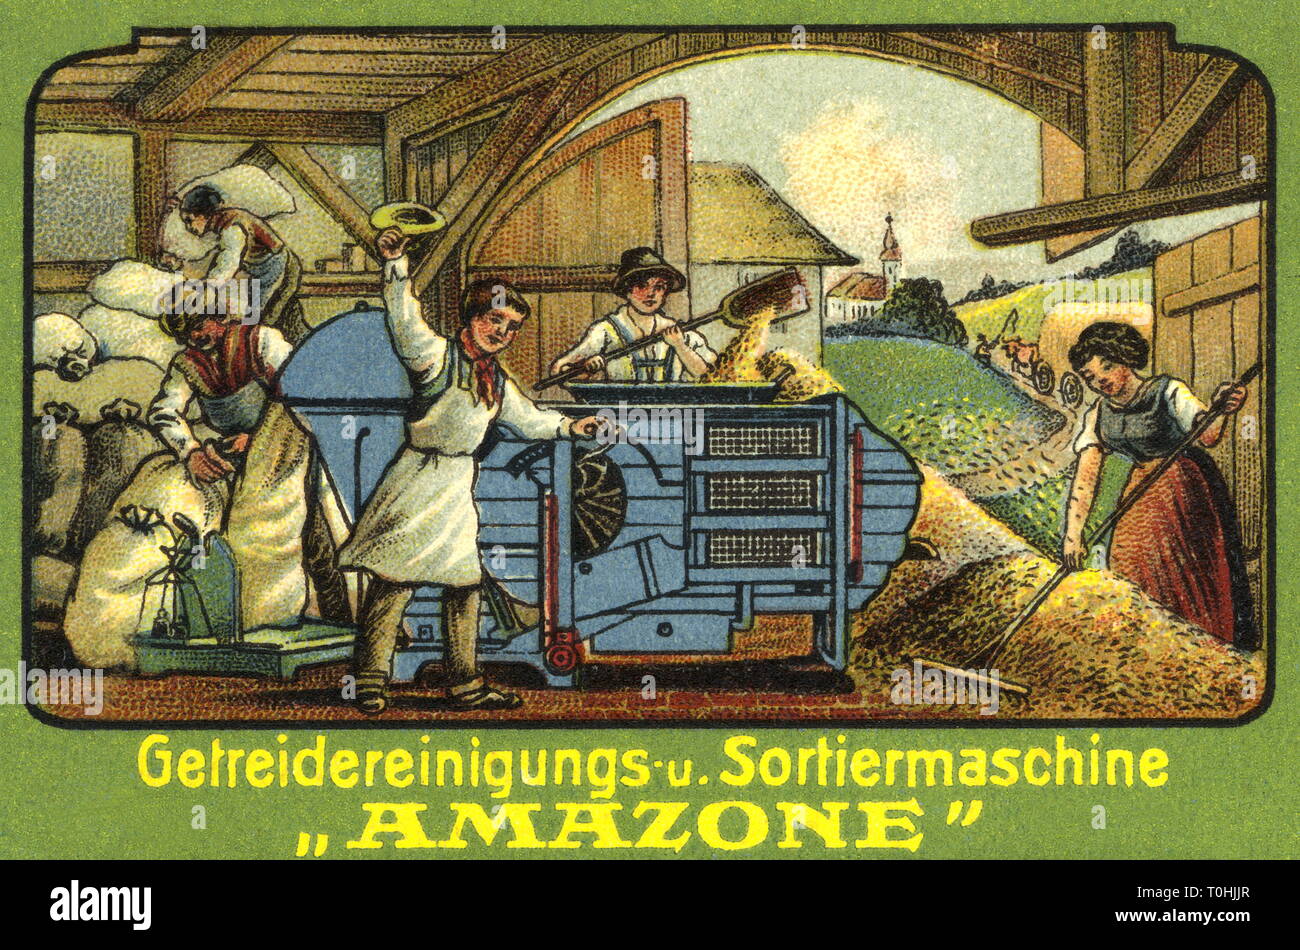 Agricoltura, pubblicità per macchina agricola della fabbrica Amazonen  Heinrich Dreyer, lavoratori durante la pulizia della granella e  -selezionatrice Amazon, Germania, circa 1910,  Additional-Rights-Clearance-Info-Not-Available Foto stock - Alamy